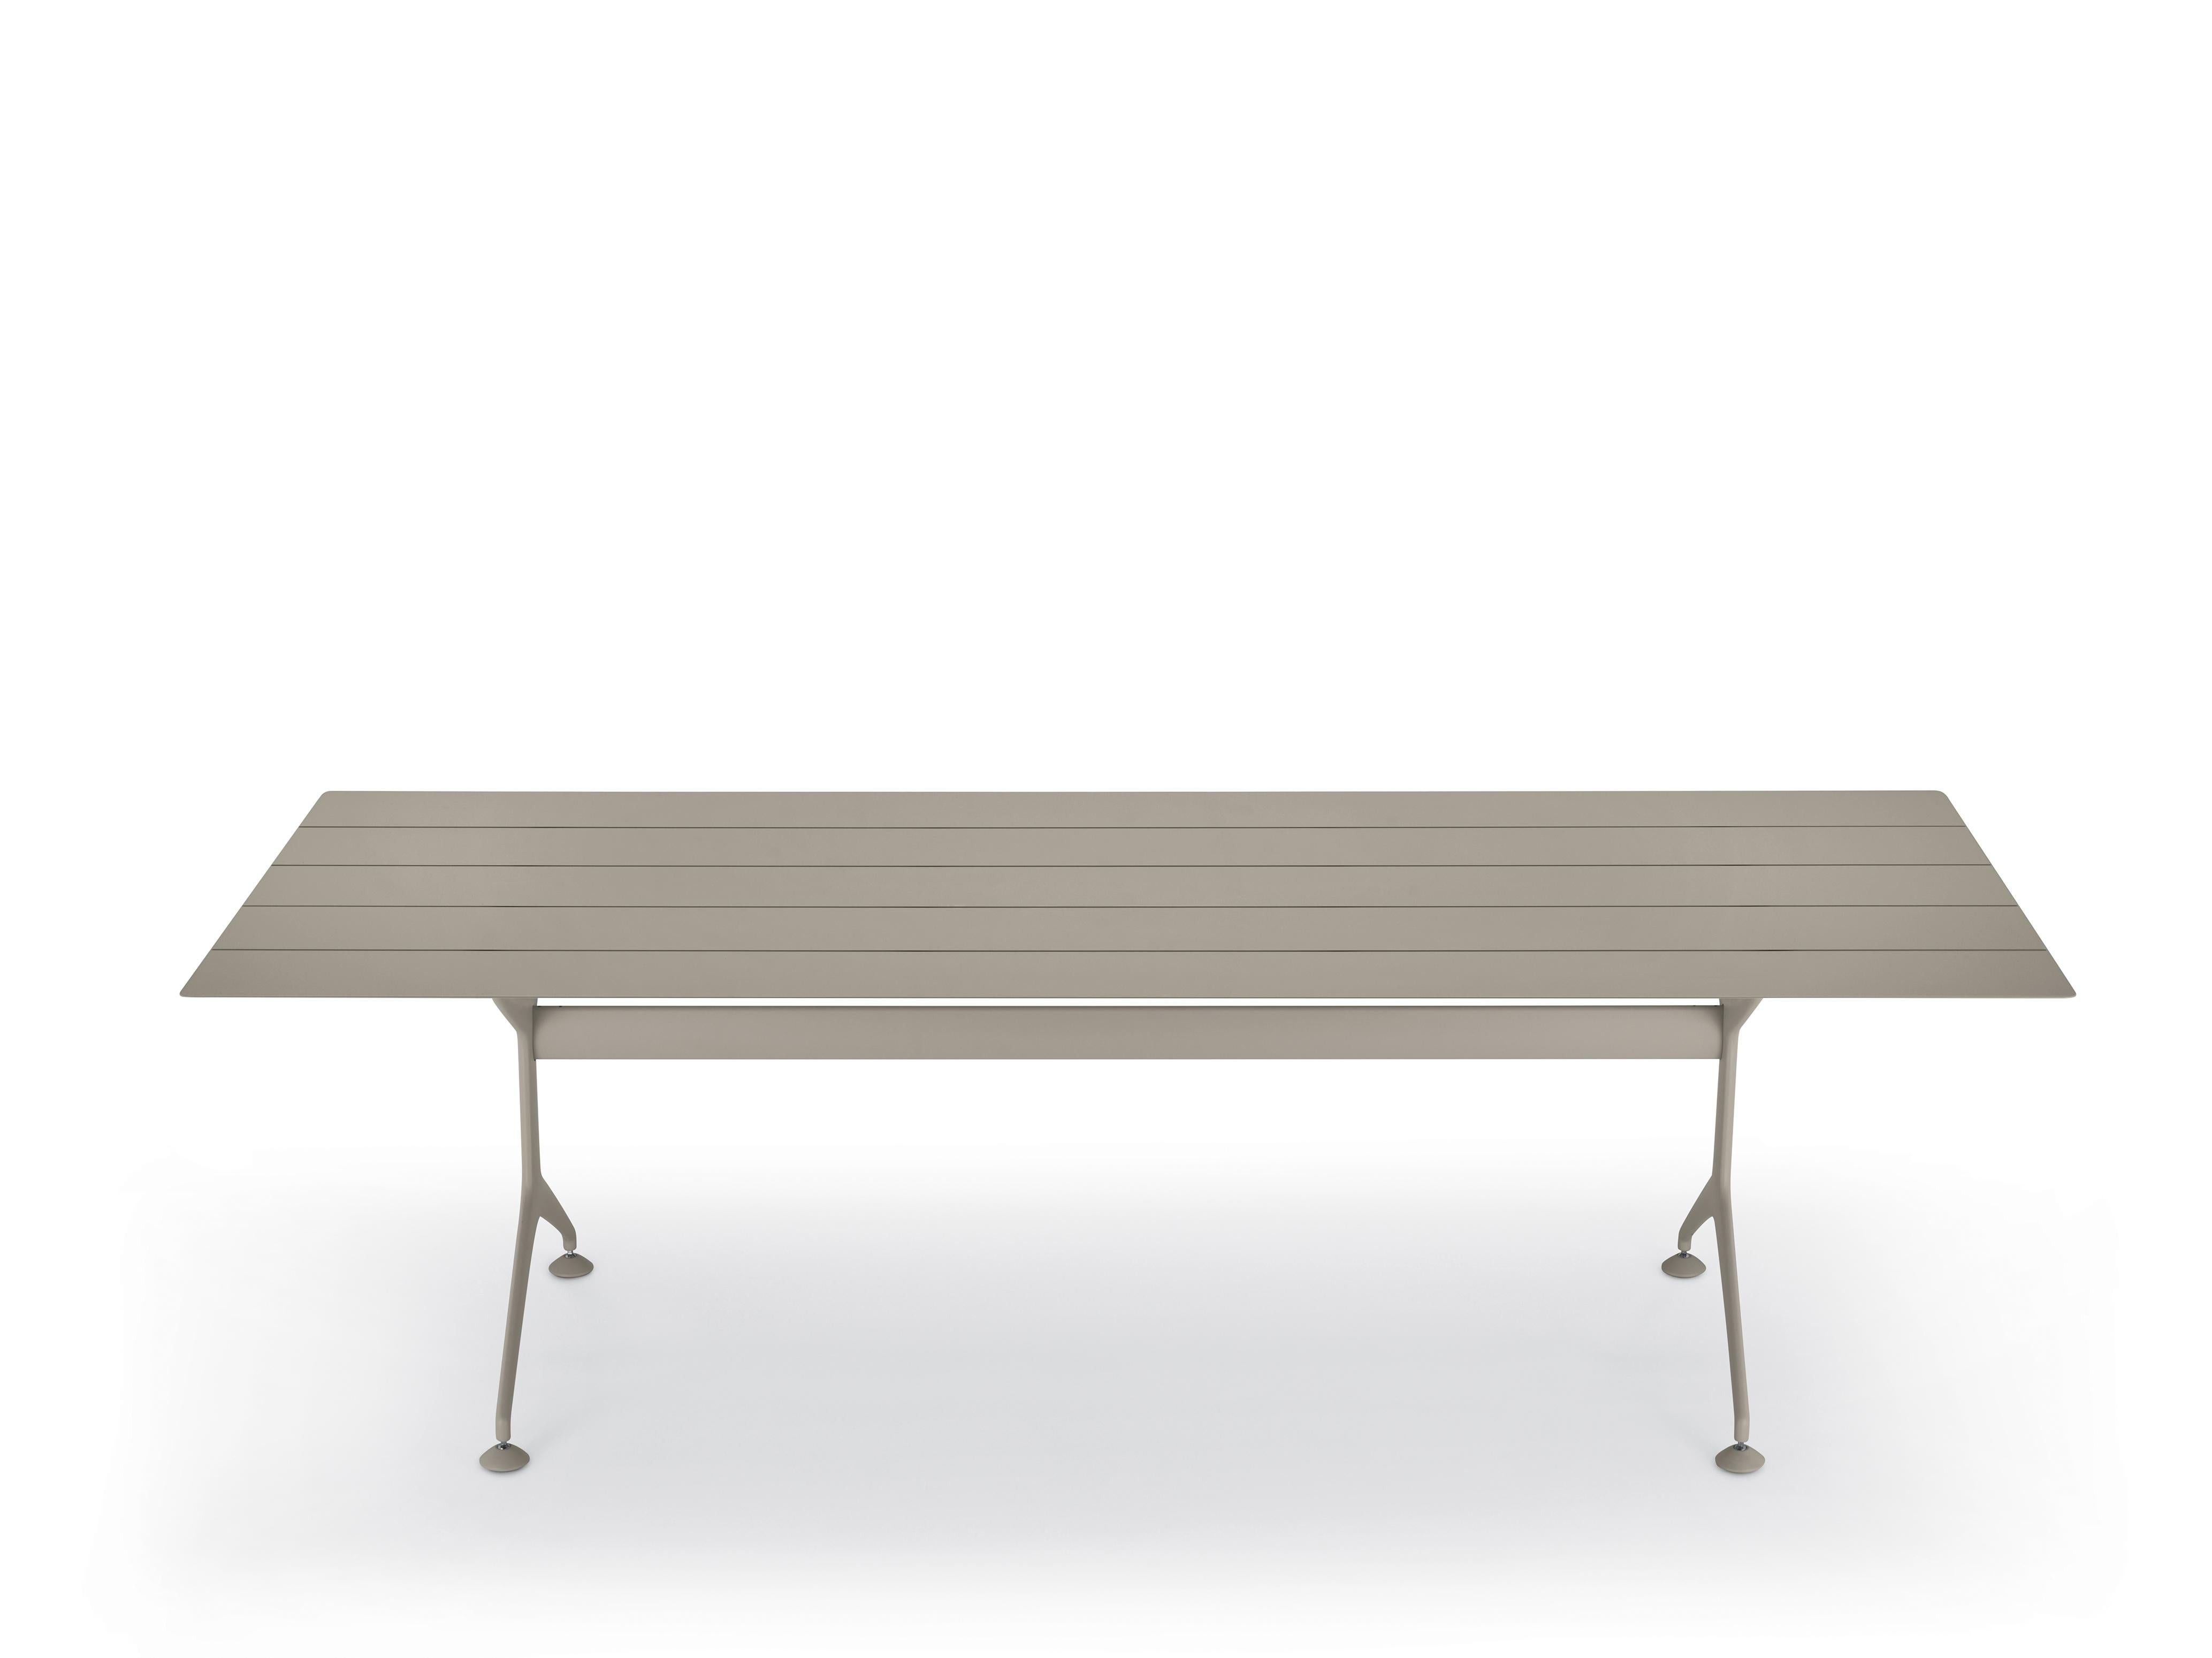 Table d'extérieur Alias 240 en lattes d'aluminium laqué sable d'Alberto Meda

Table fixe pour l'extérieur avec structure en aluminium moulé sous pression laqué. Plateau en lames d'aluminium extrudé laqué.

Né à Lenno Tremezzina (Como), en 1945,